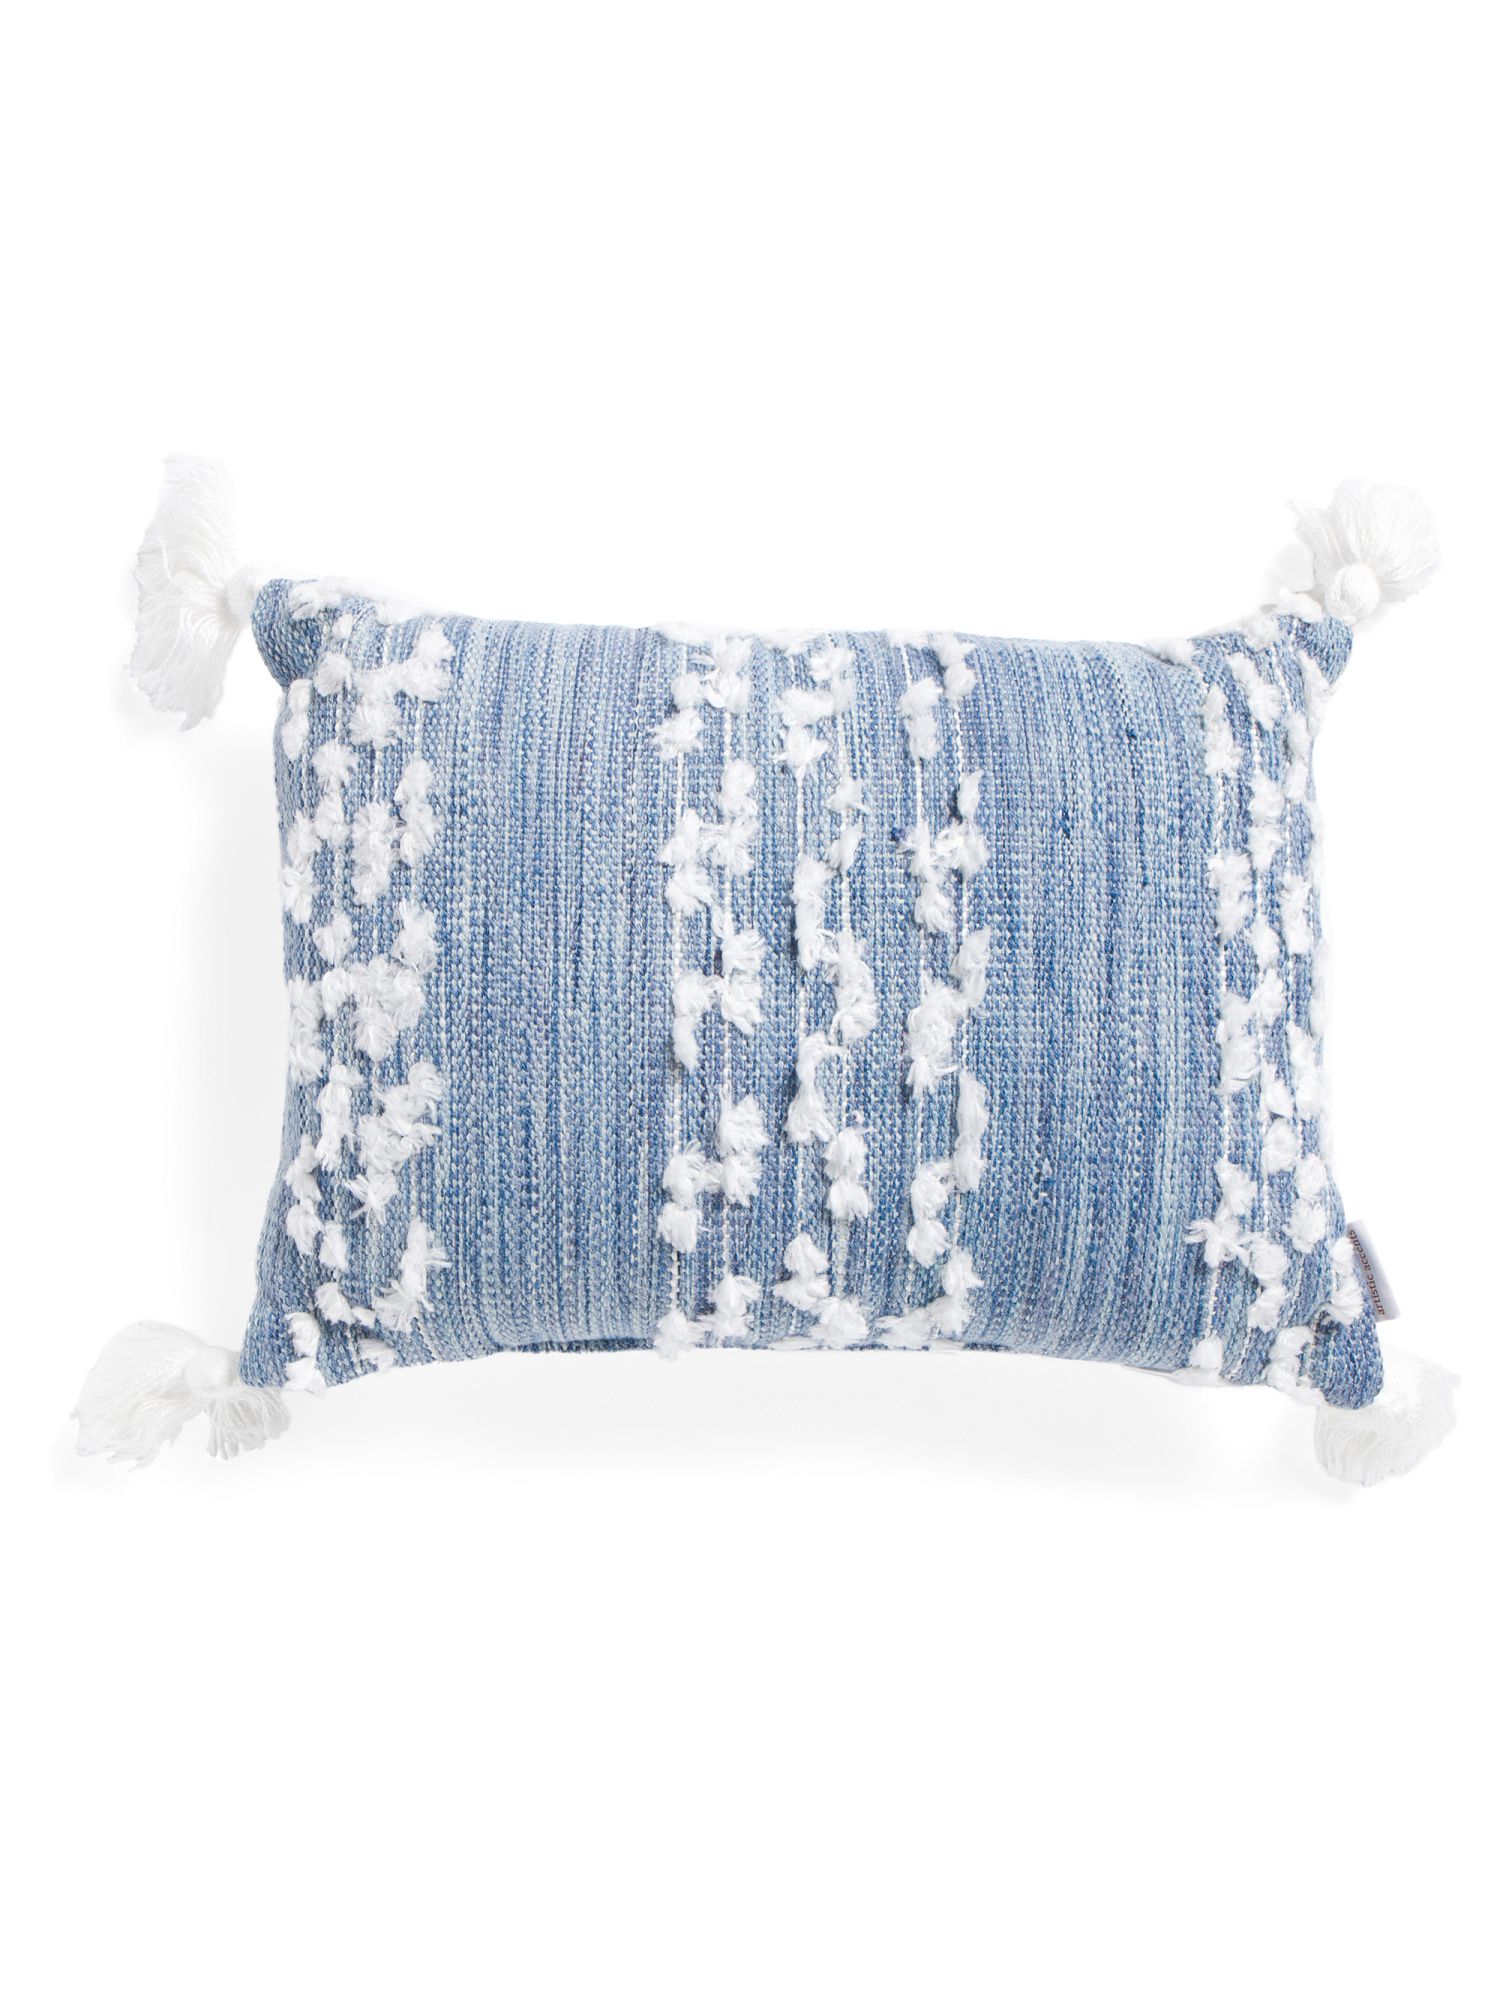 14x20 Indoor Outdoor Textured Pillow | TJ Maxx